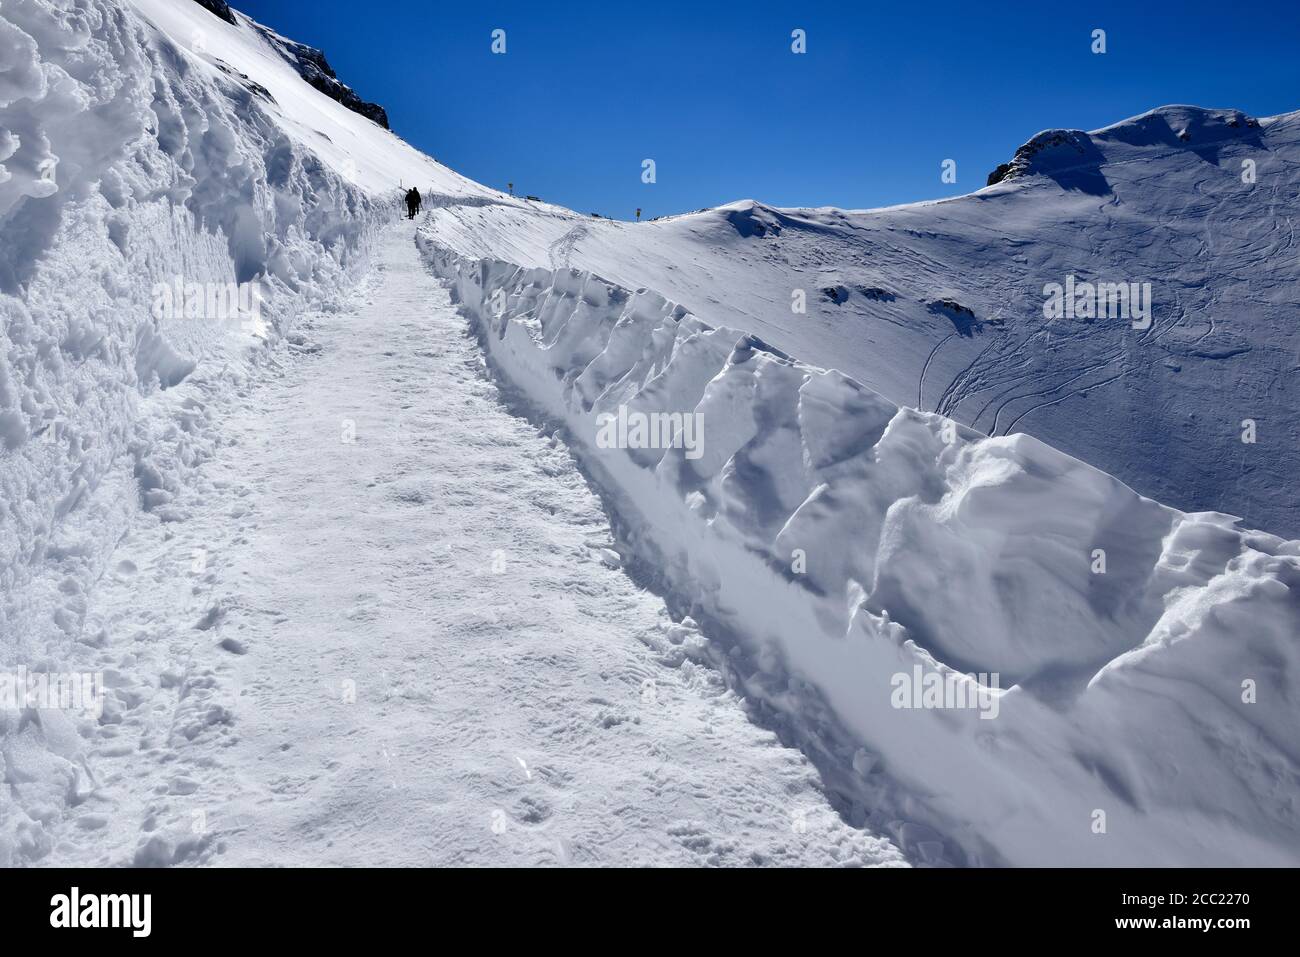 In Germania, in Baviera, vista di passamani escursioni invernali trail a stazione di montagna Foto Stock